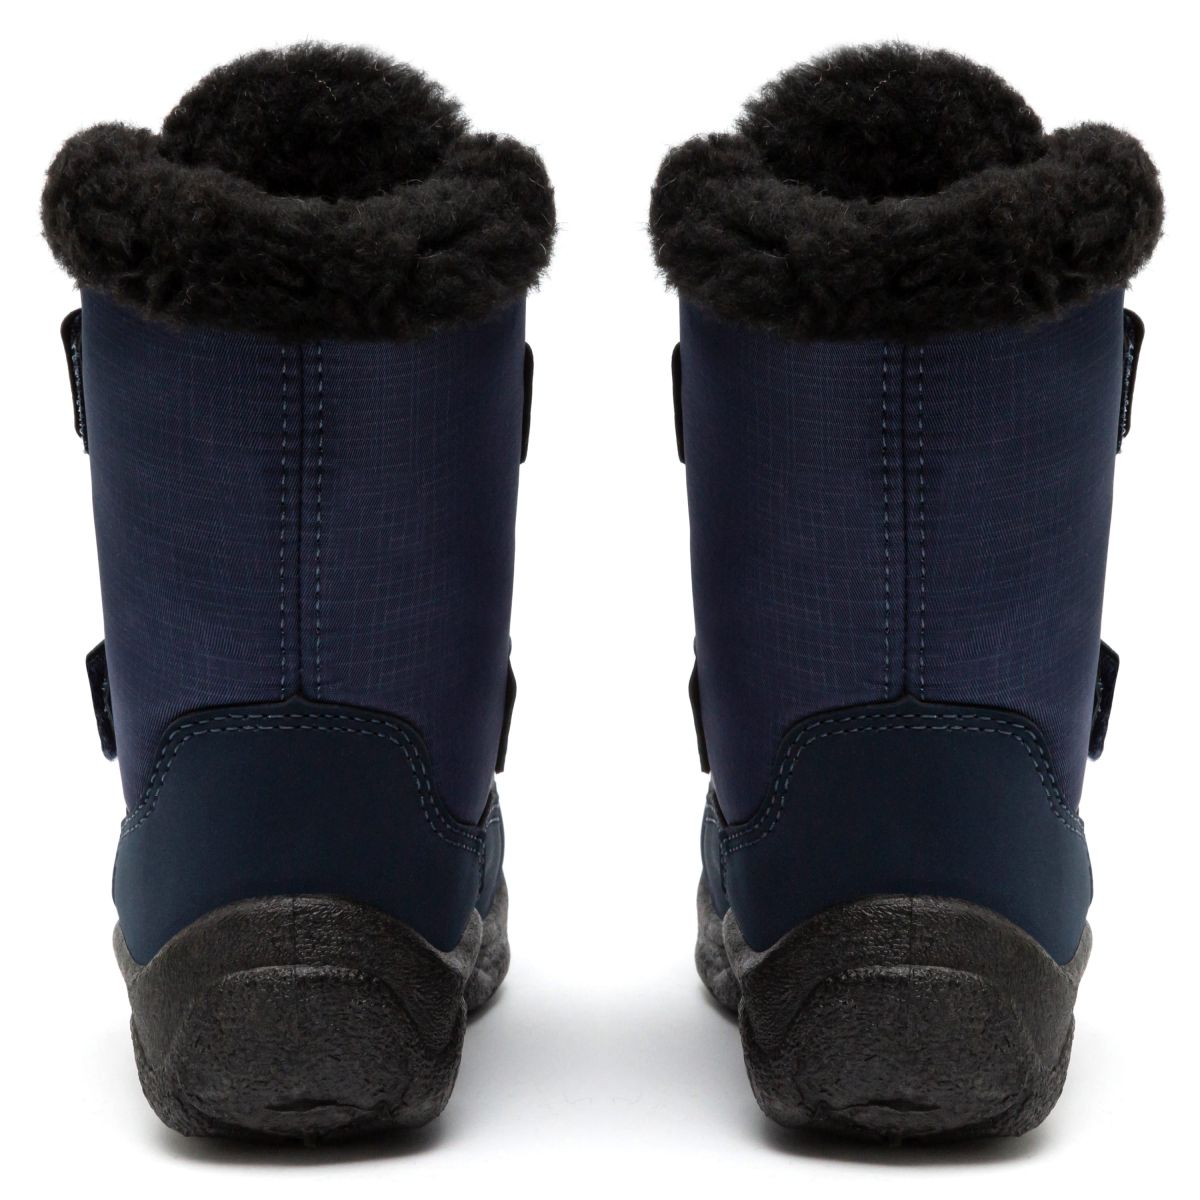 Дитячі чоботи-дутики зимові Alaska сині на чорній підошві